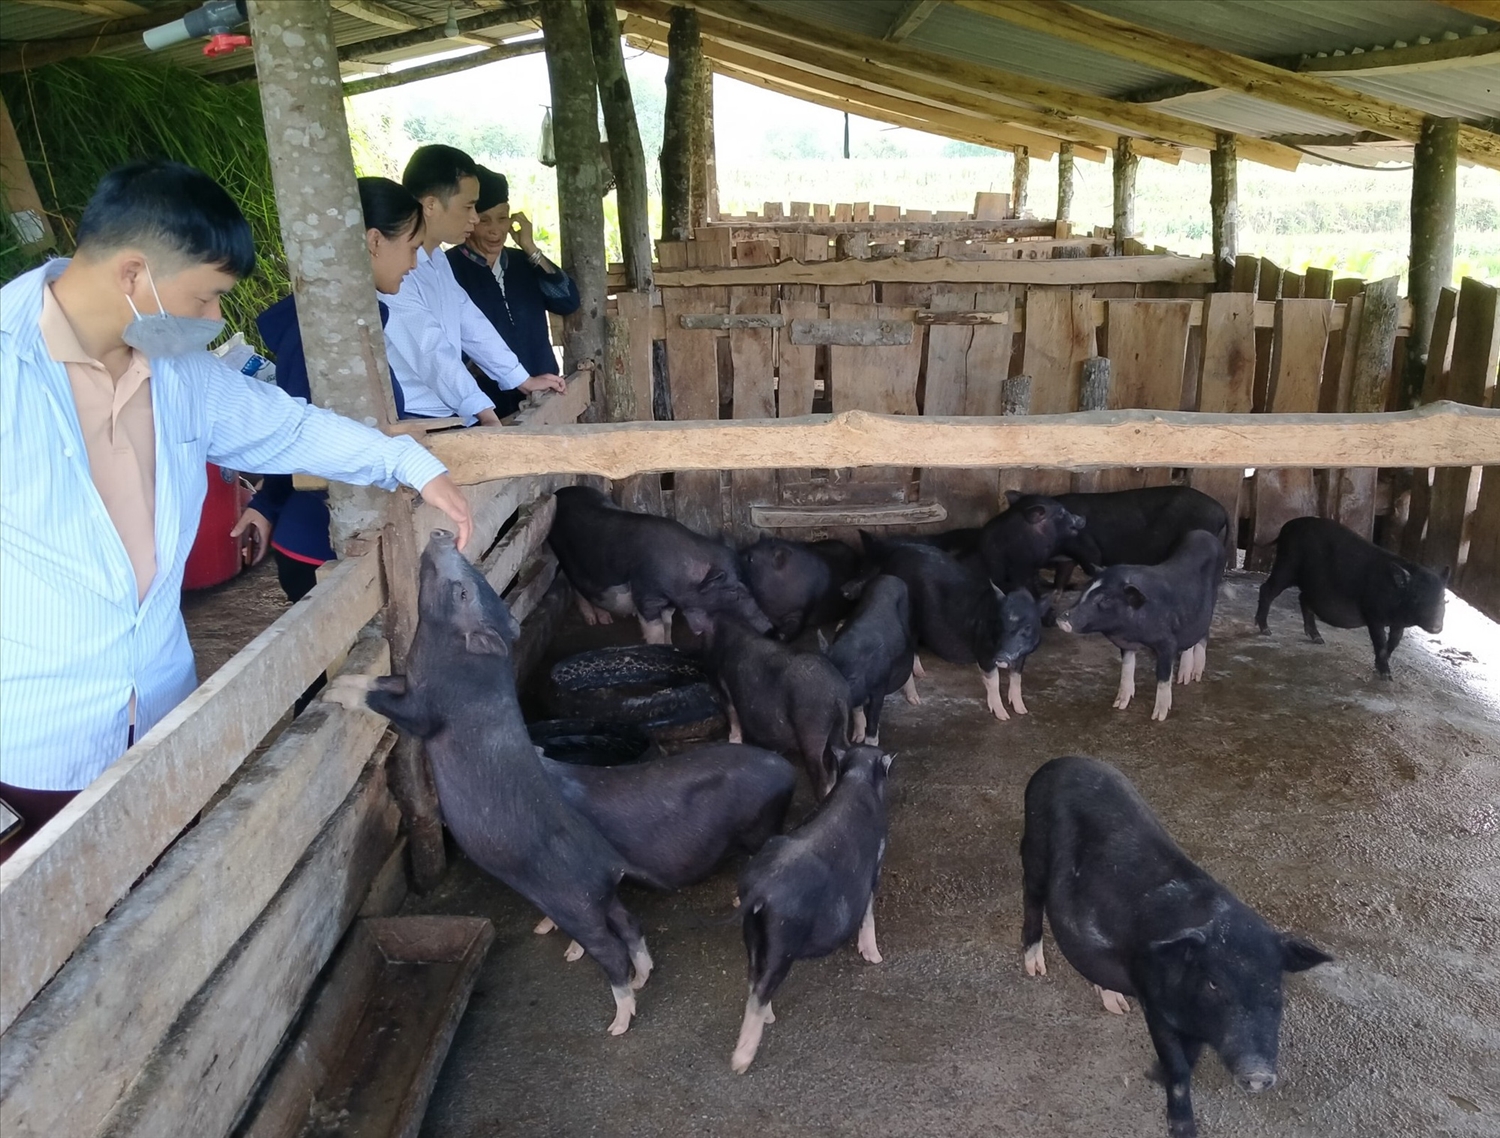 Giá thịt lợn đen (hơi) trên địa bàn Hà Giang tại thời điểm tháng 6/2022 là 63 nghìn đồng/kg, tăng 5,26% so với tháng 5/2022. (Ảnh minh họa)